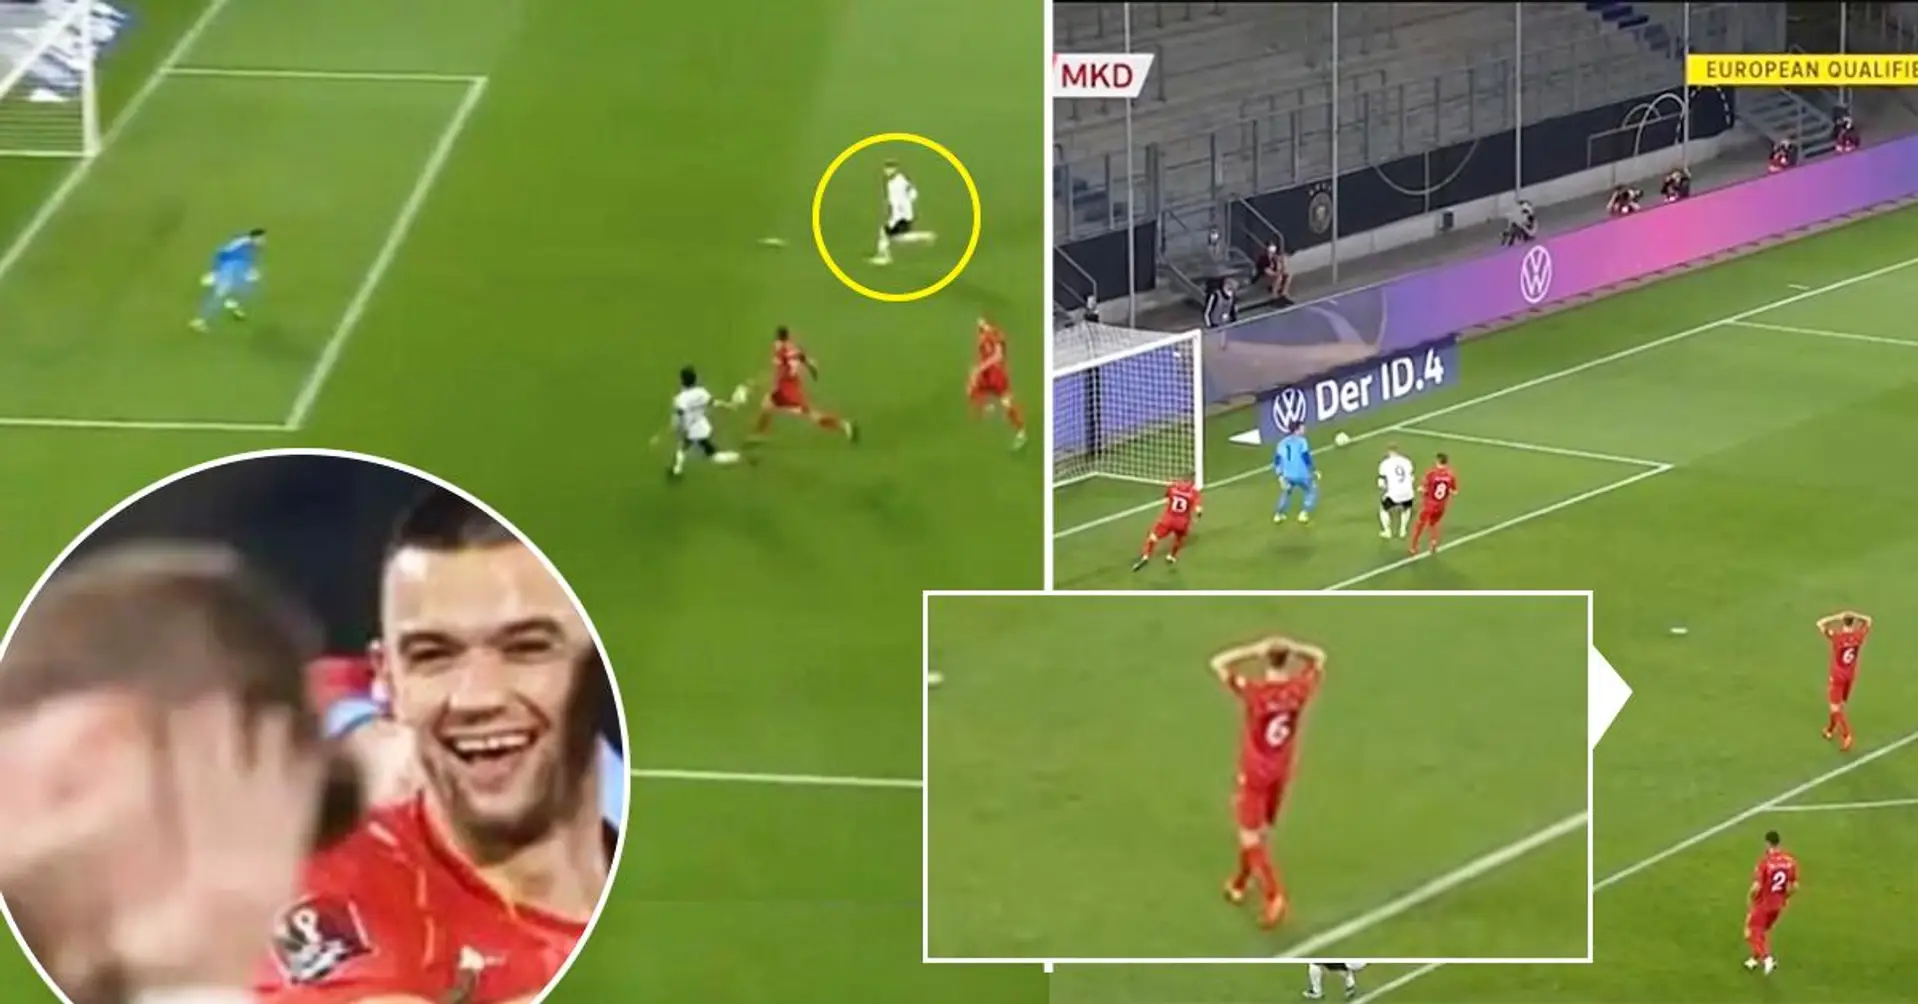 La reazione del giocatore della Macedonia all'incredibile errore di Timo Werner è stata ripresa dalle telecamere